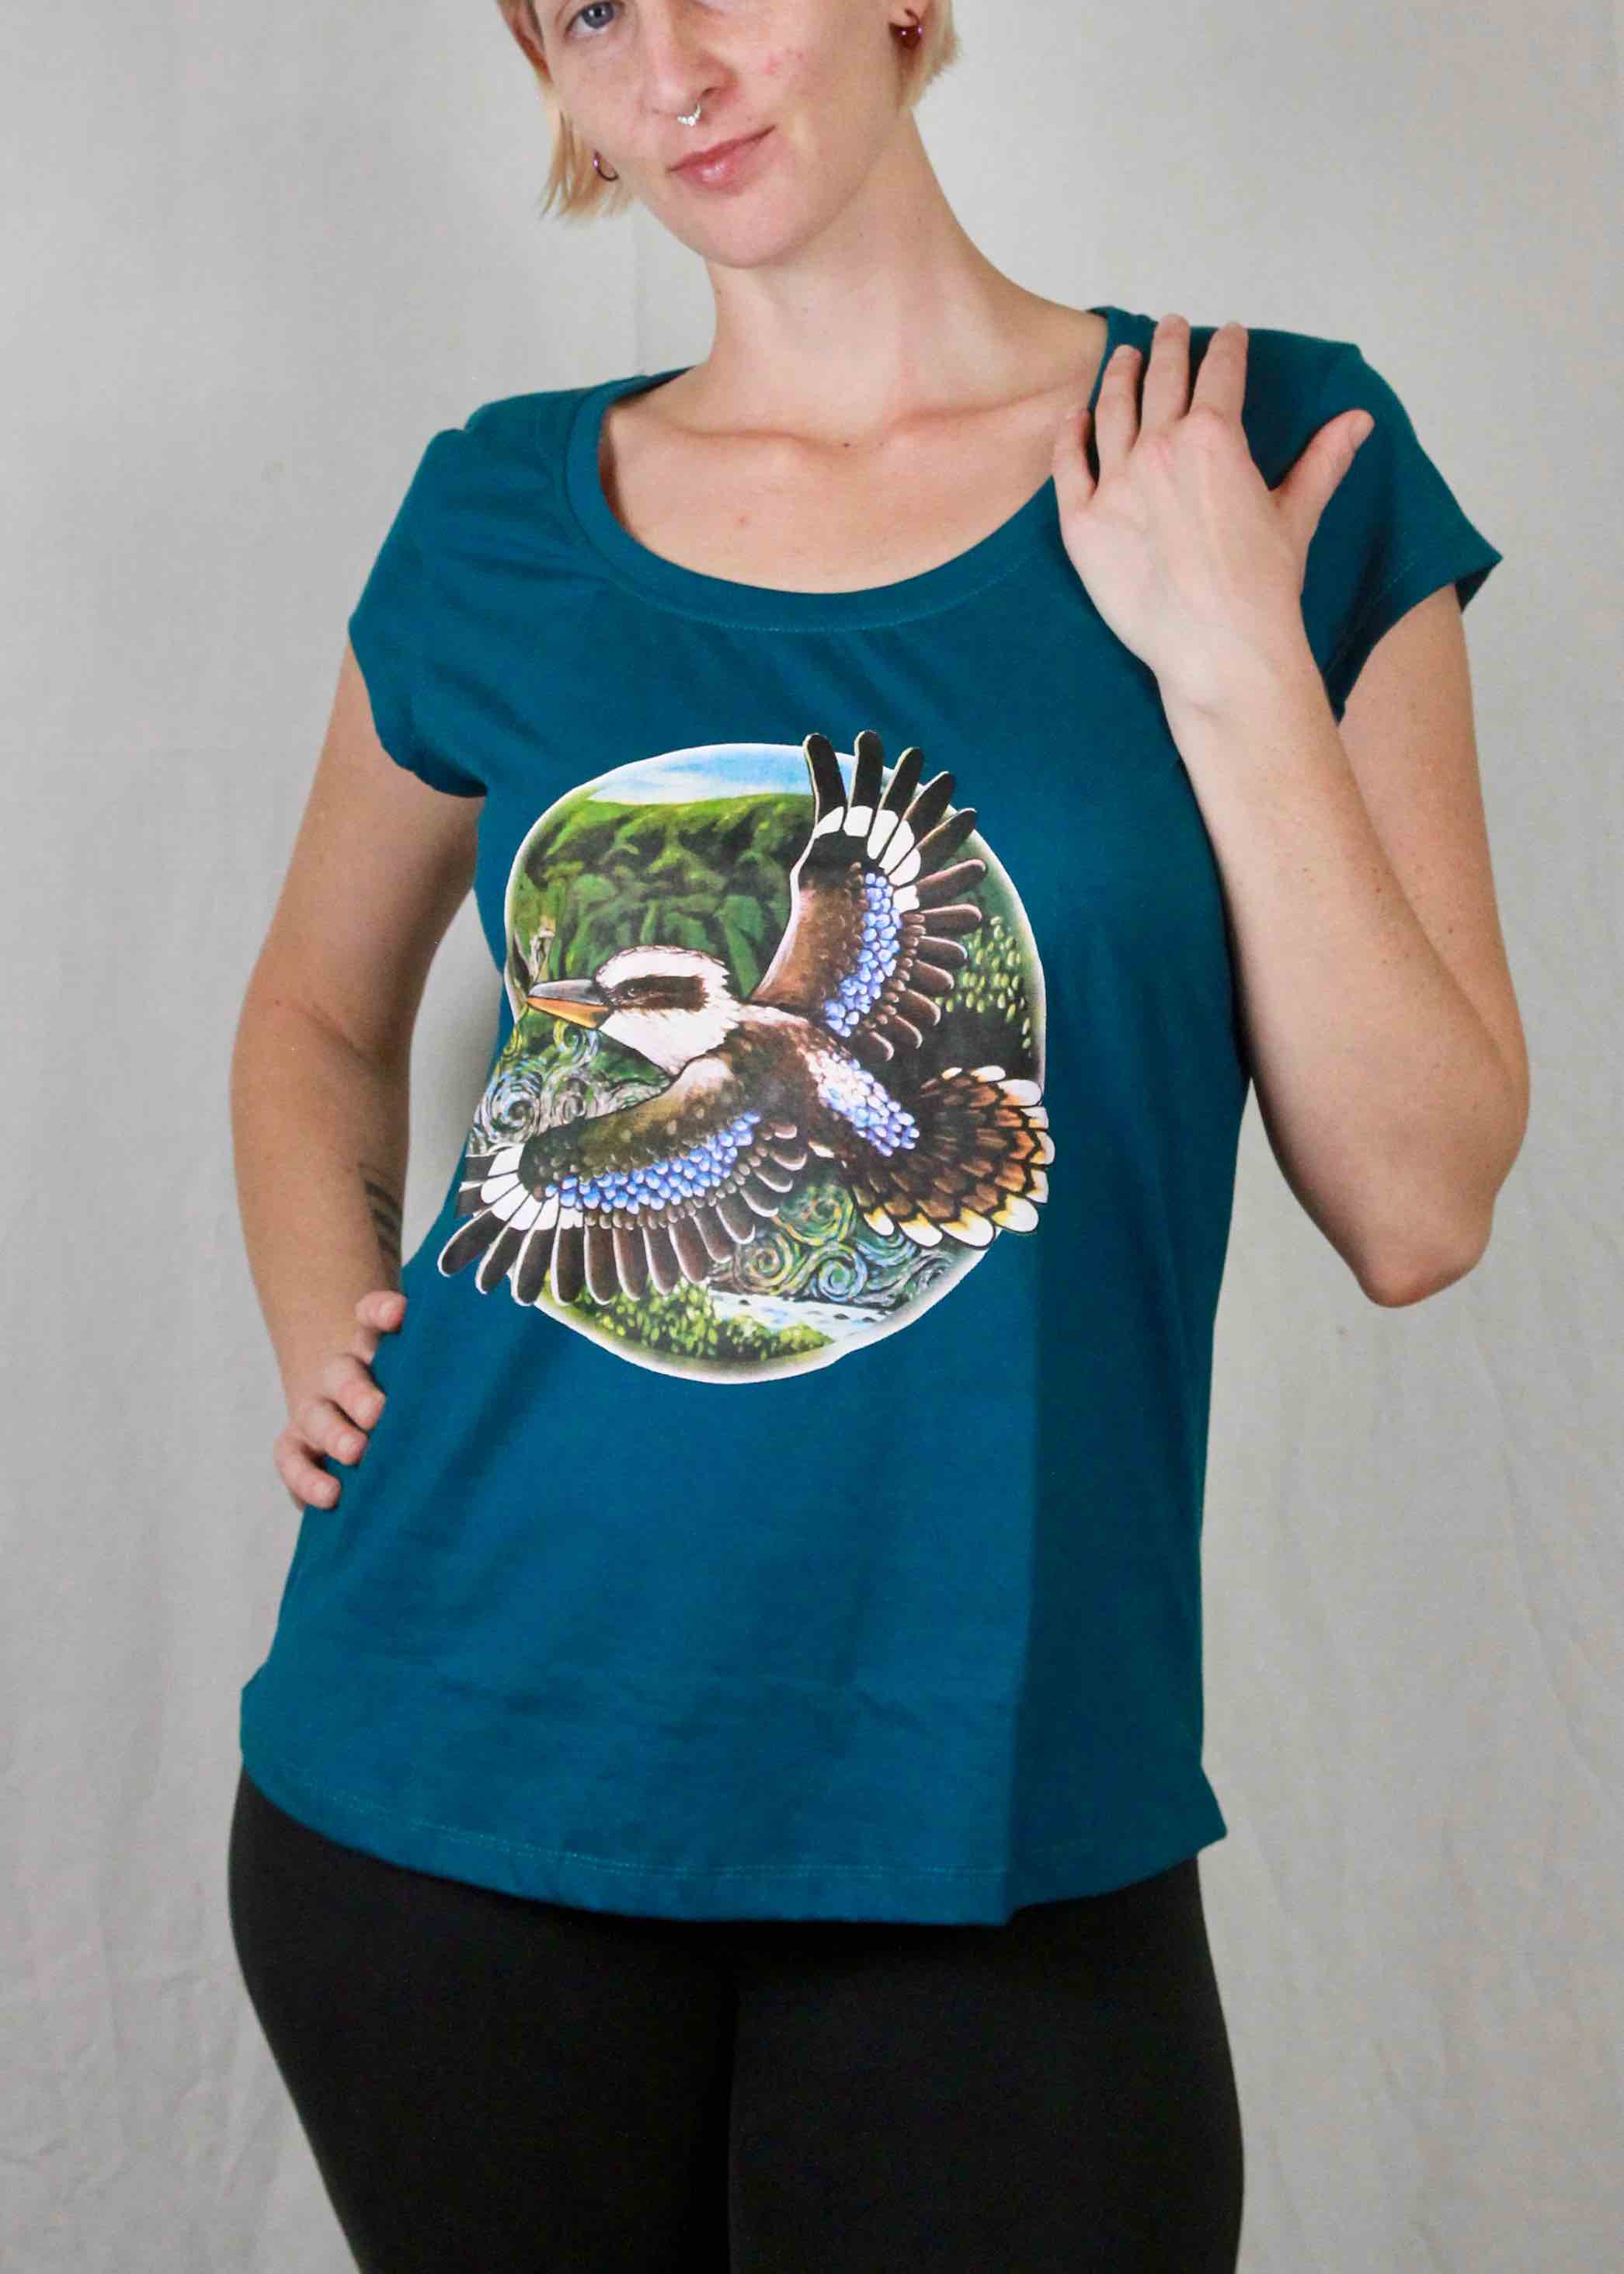 Kookaburra T-Shirt Women